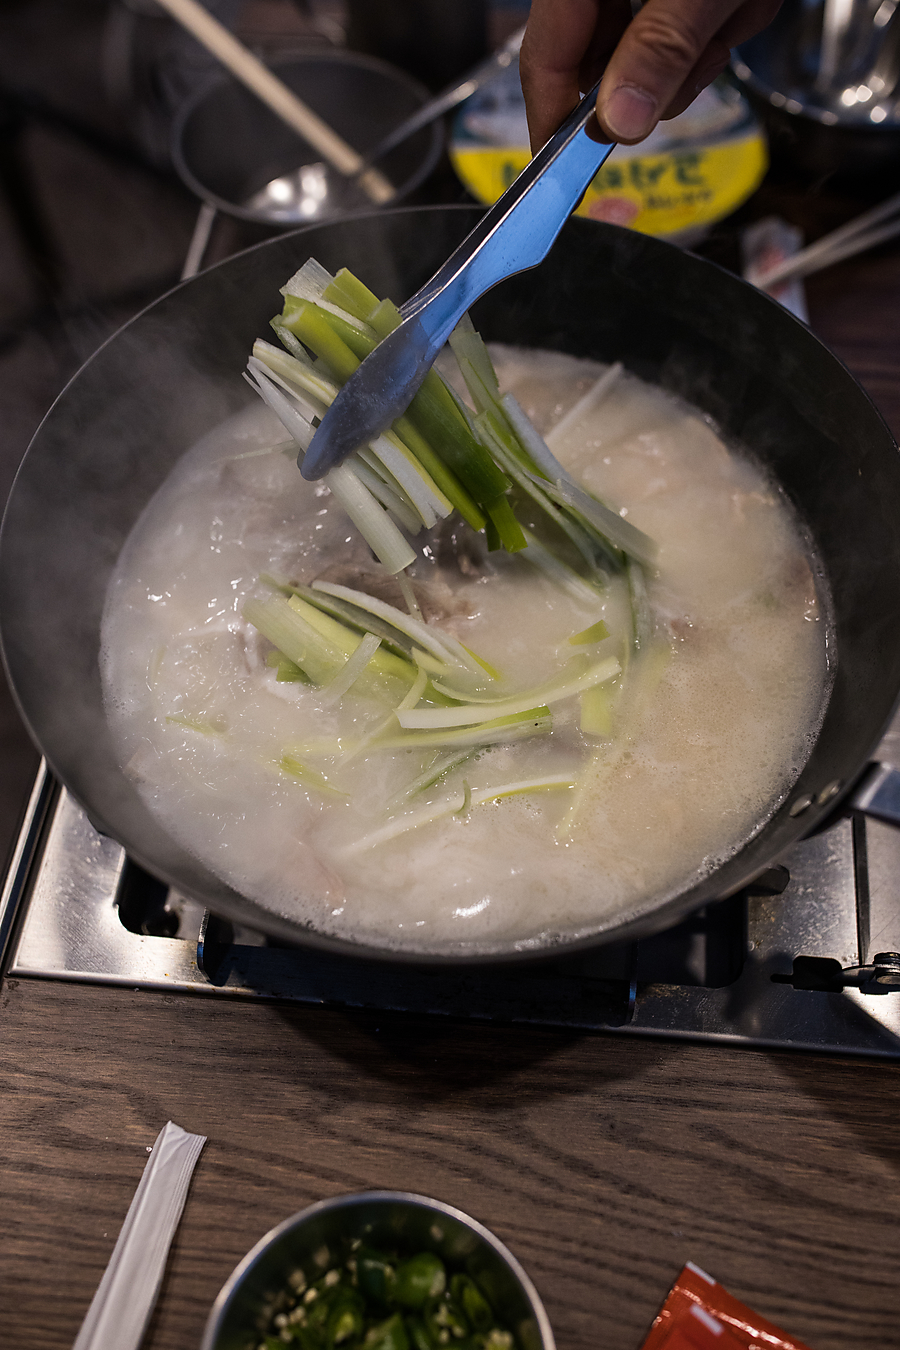 국밥 맛있는 간단 밀키트 캠핑음식 추천 몽실종가 부산 돼지국밥맛집